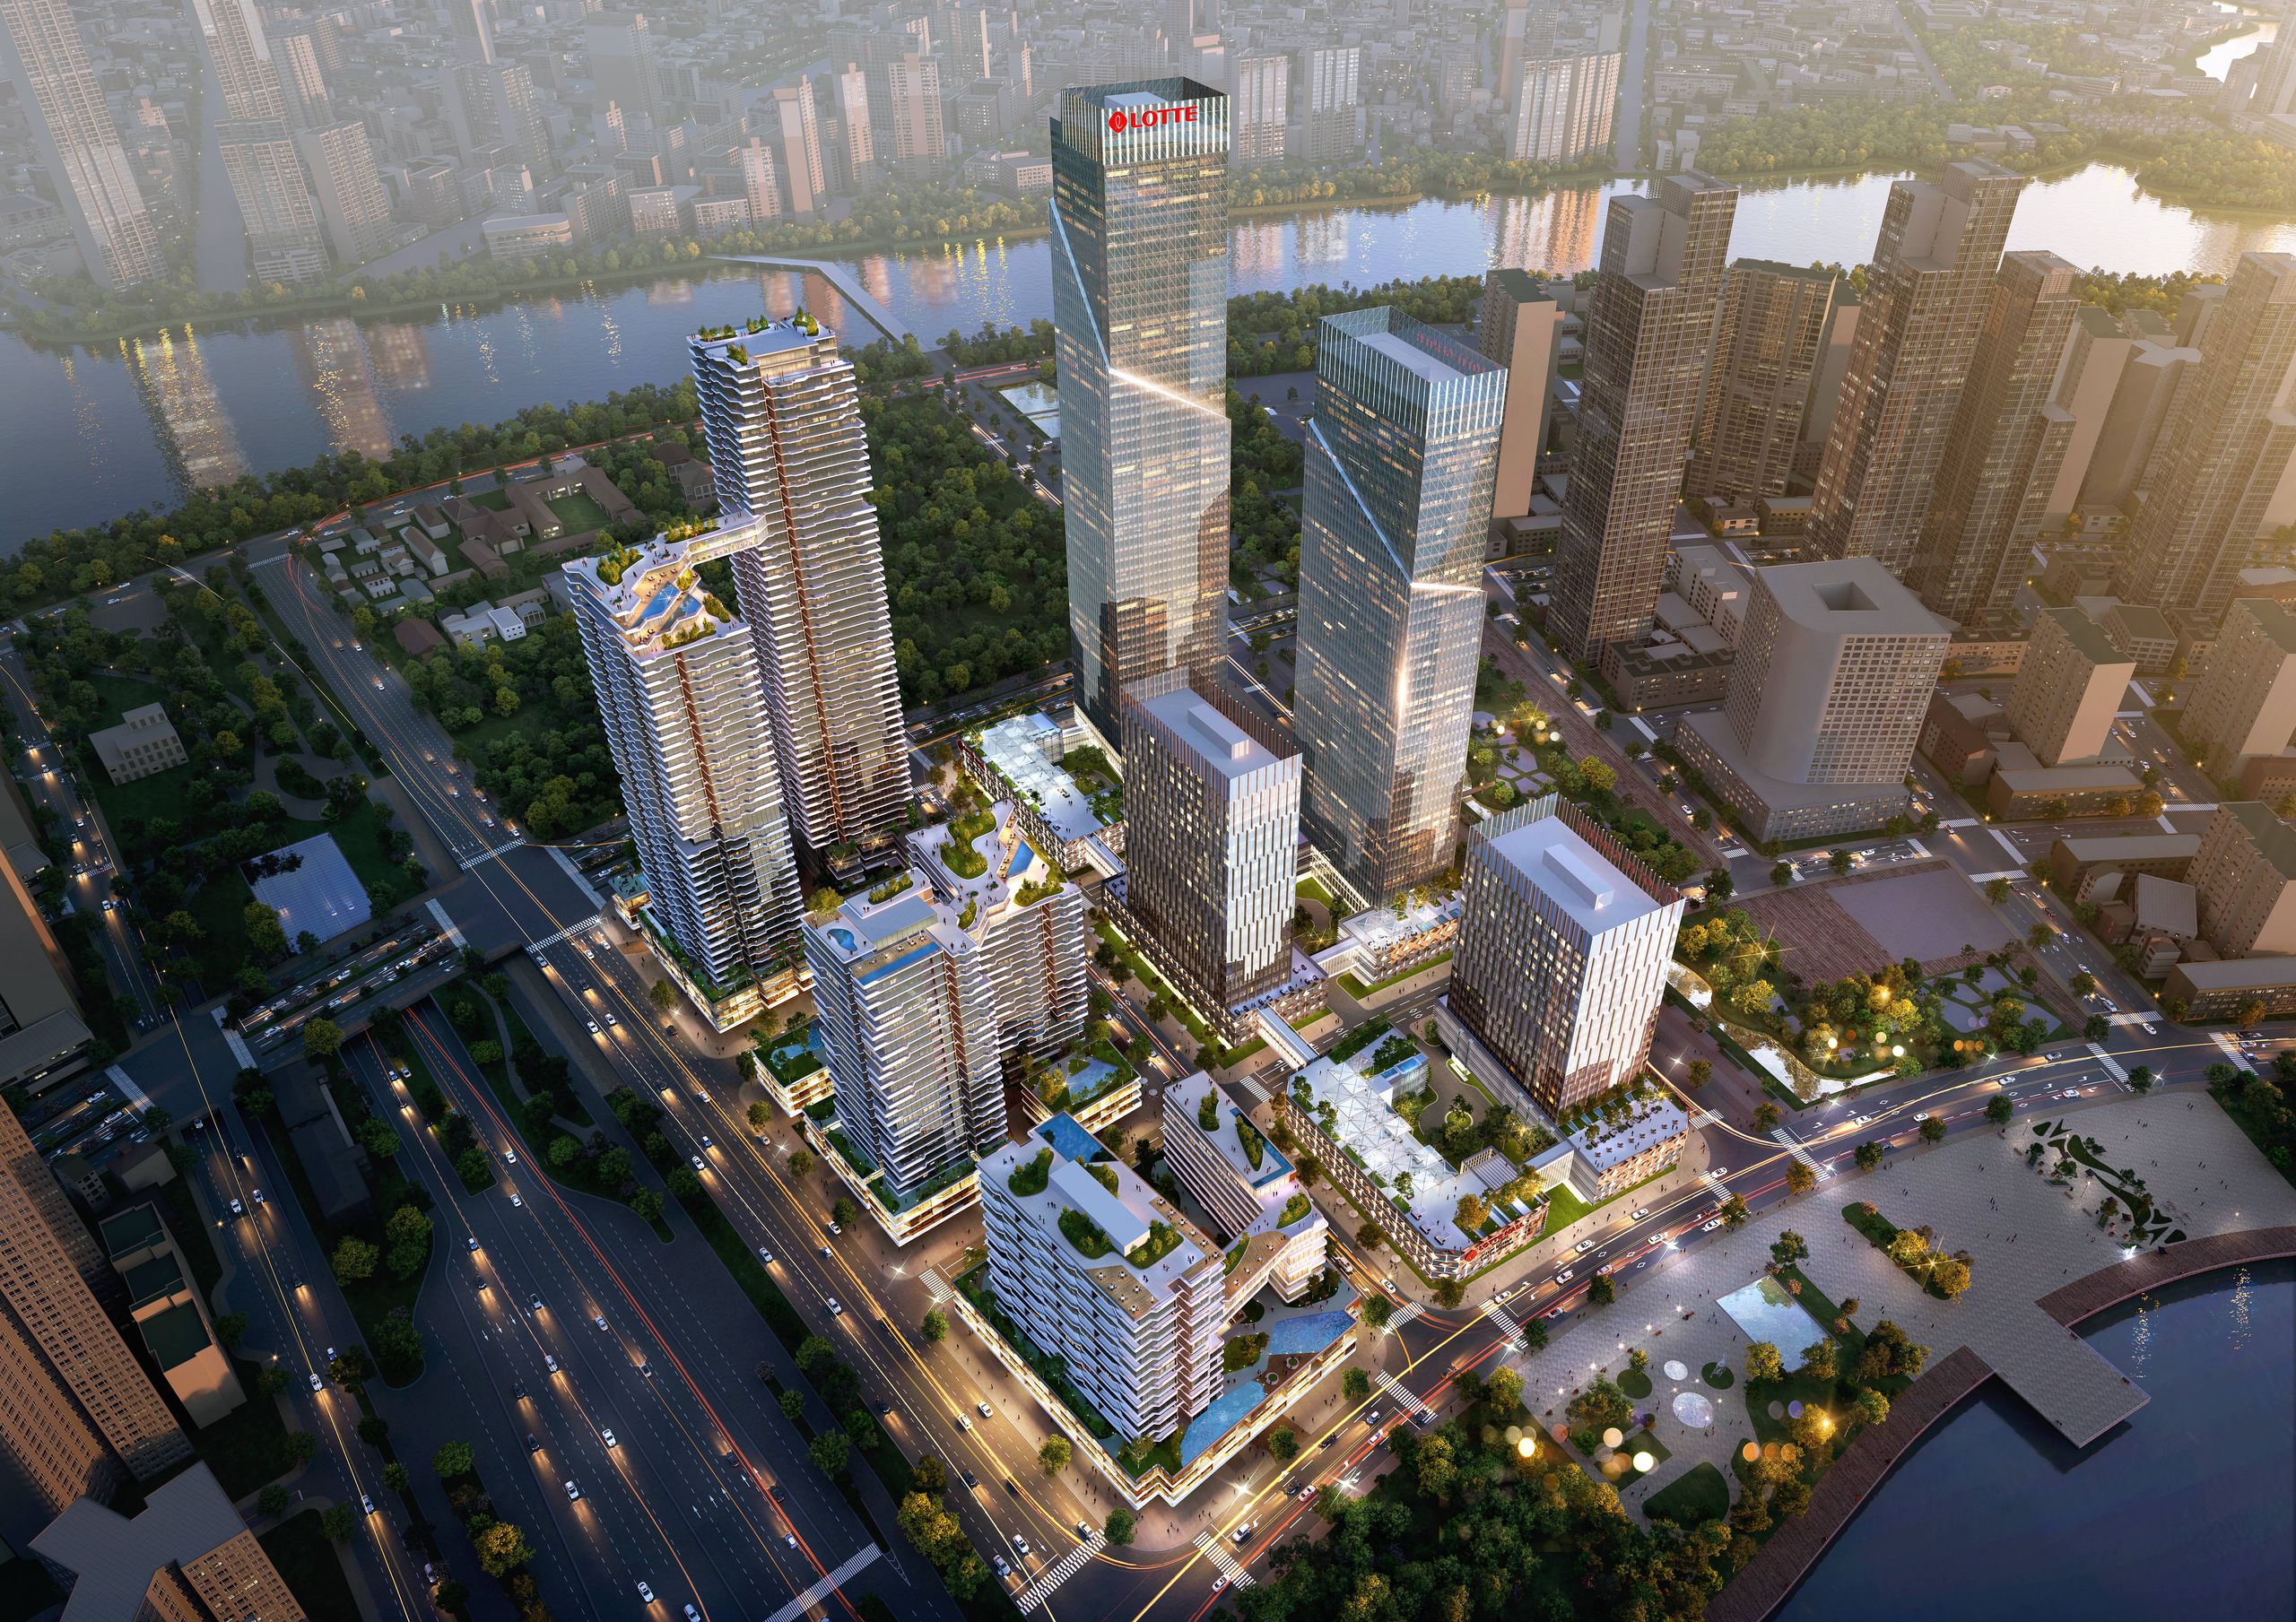 Cao tốc Tân Phú – Liên Khương ‘định hình tương lai Lâm Đồng’ khởi công tháng 6/2023